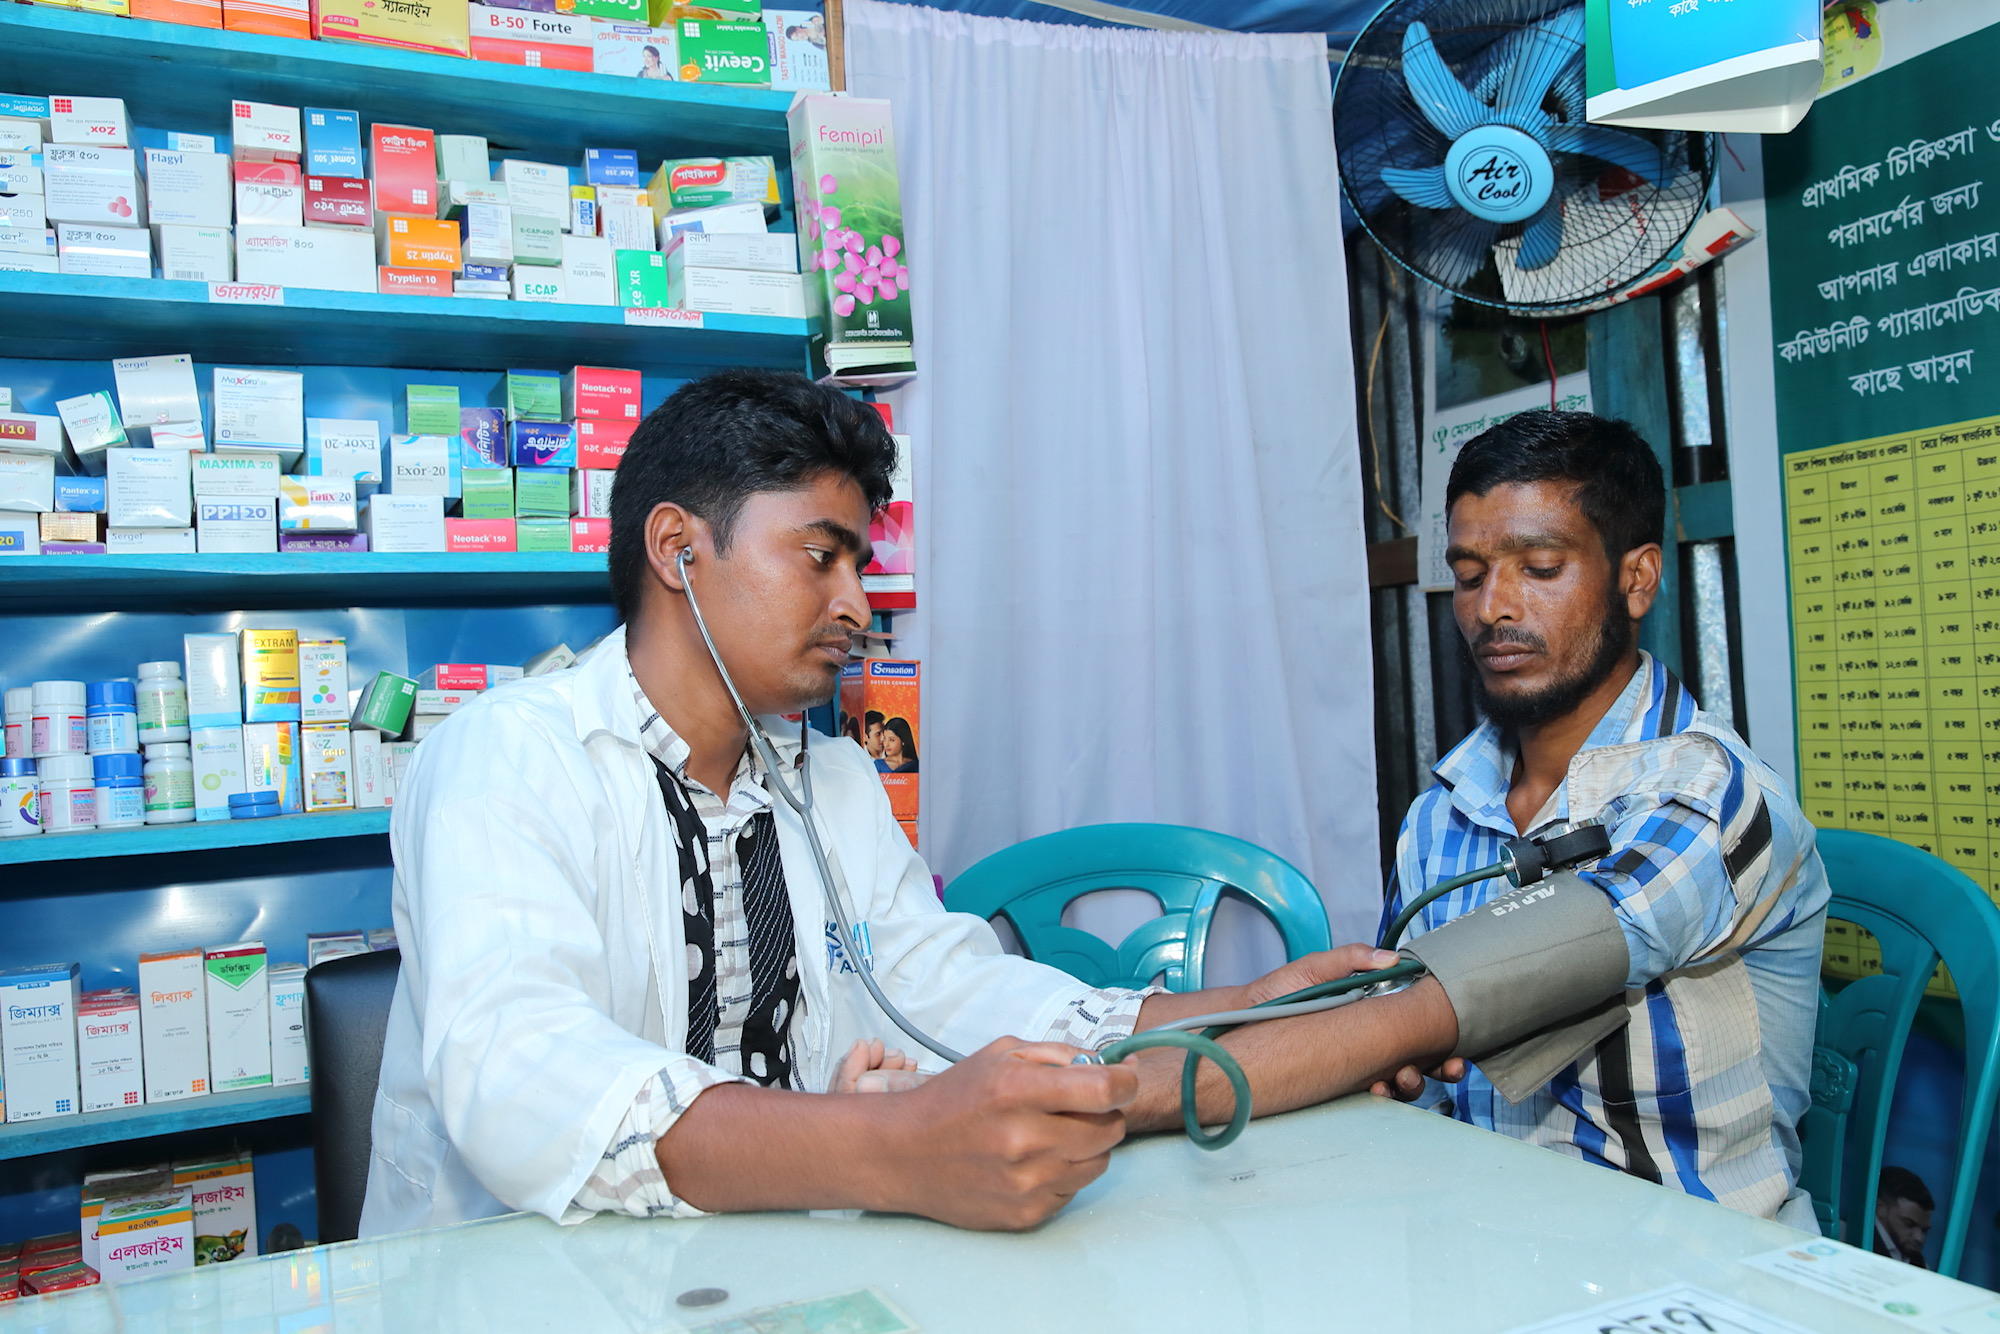 Des auxiliaires médicaux au Bangladesh